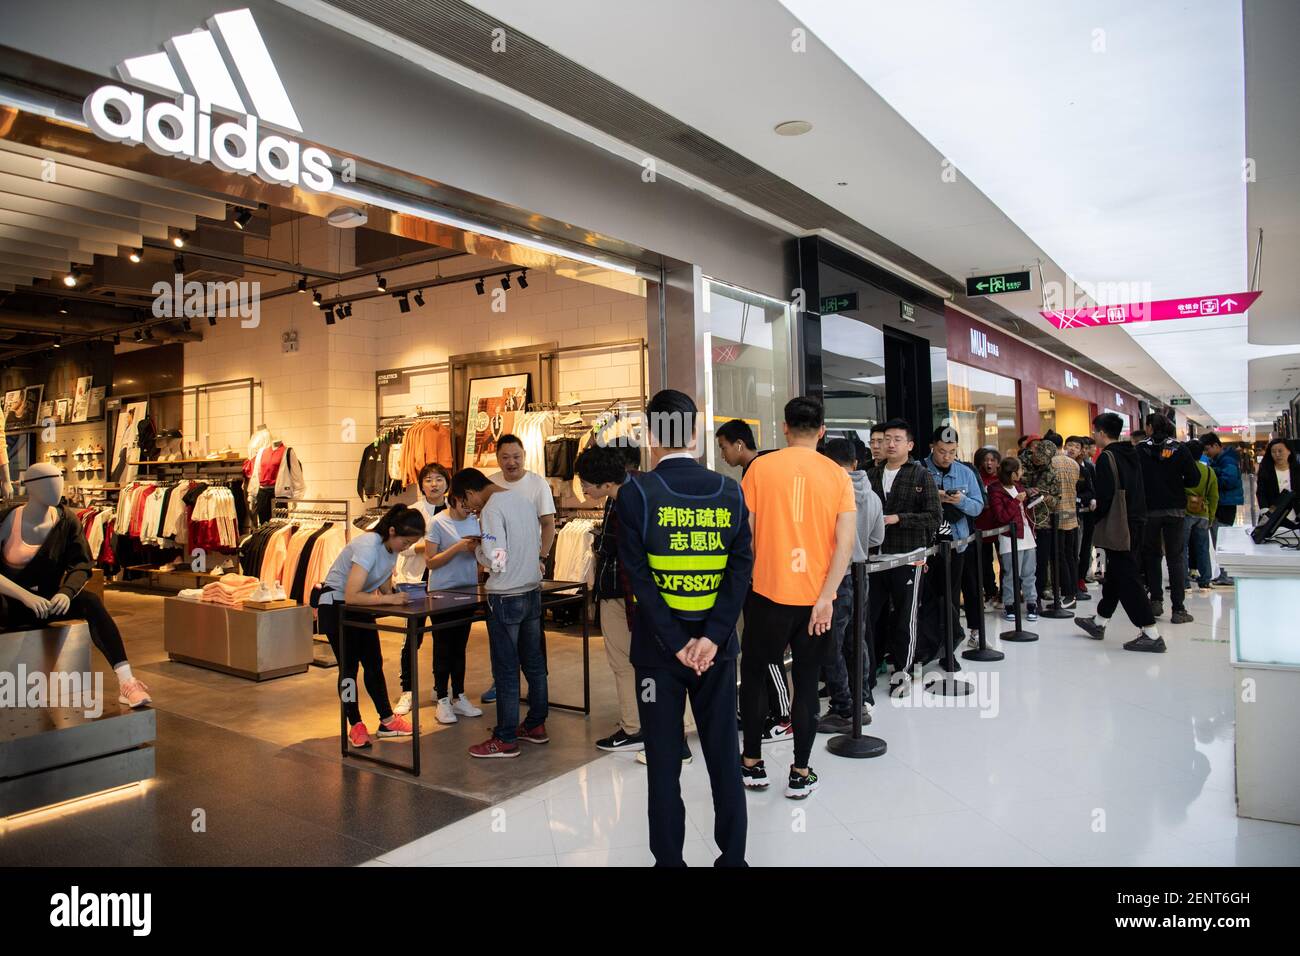 Los consumidores se alinean comprar el recién lanzado Adidas Yeezy, una entre la Marca alemana de ropa deportiva Adidas y el rapero estadounidense Kanye West, en tienda Adidas en